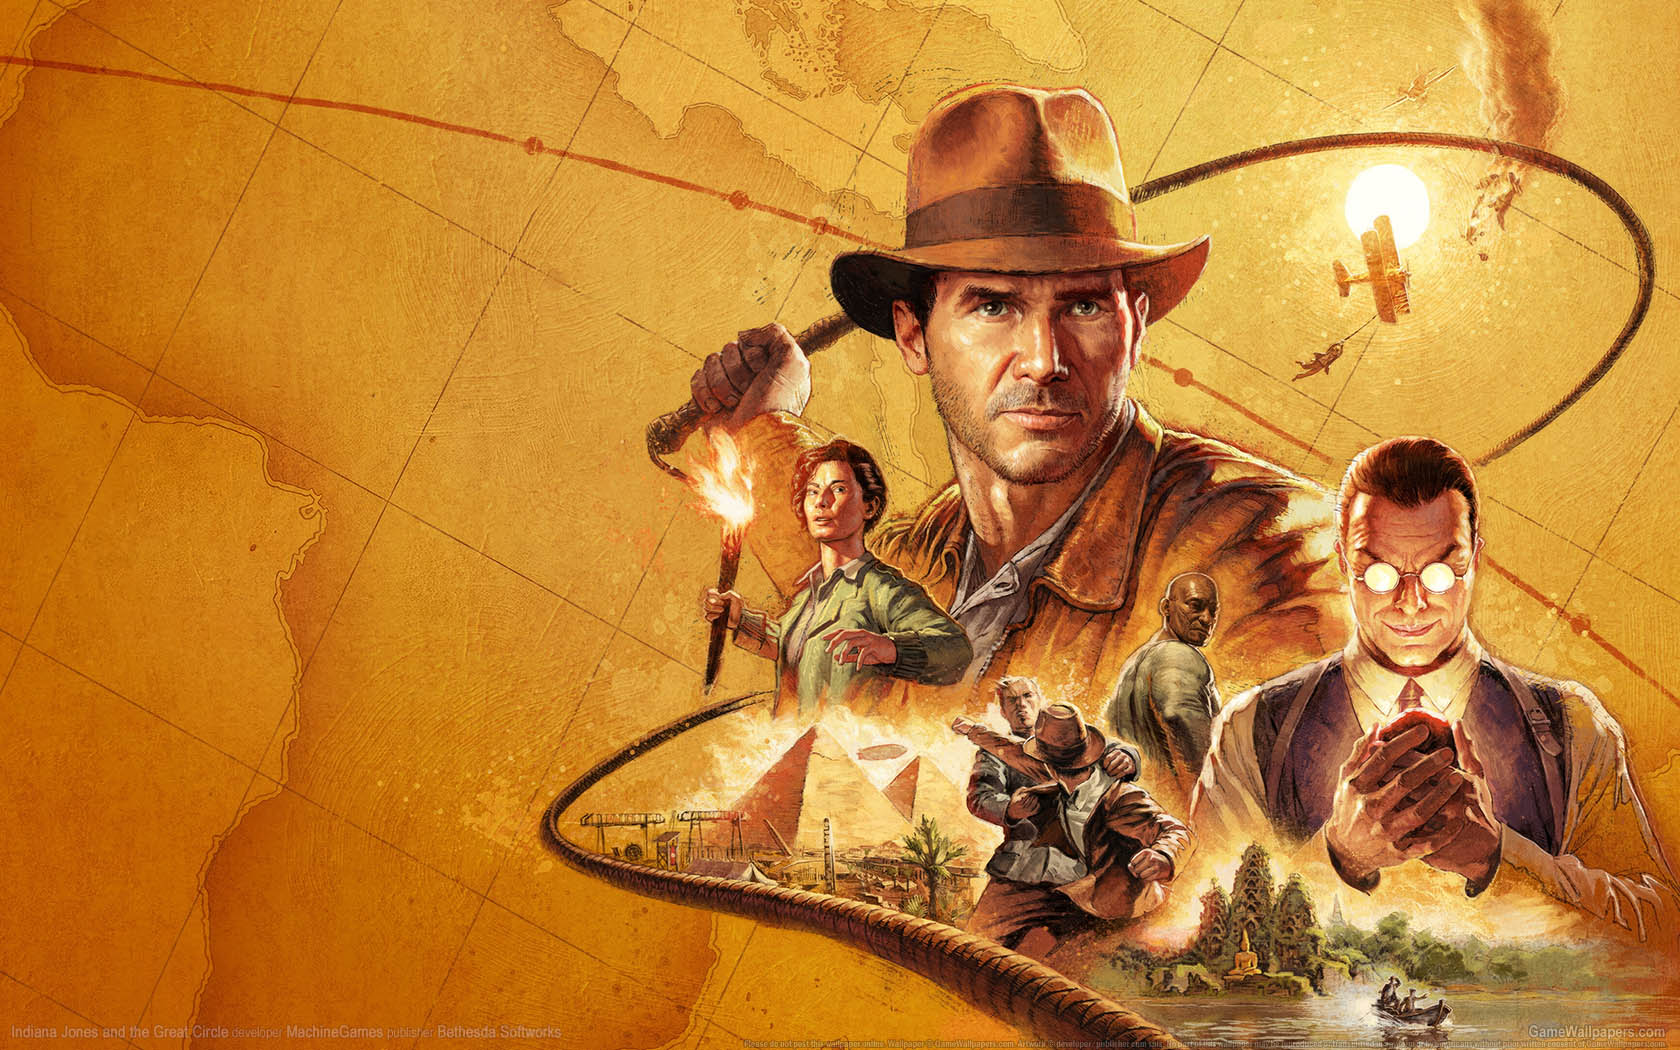 Indiana Jones and the Great Circle fond d'cran 01 1680x1050